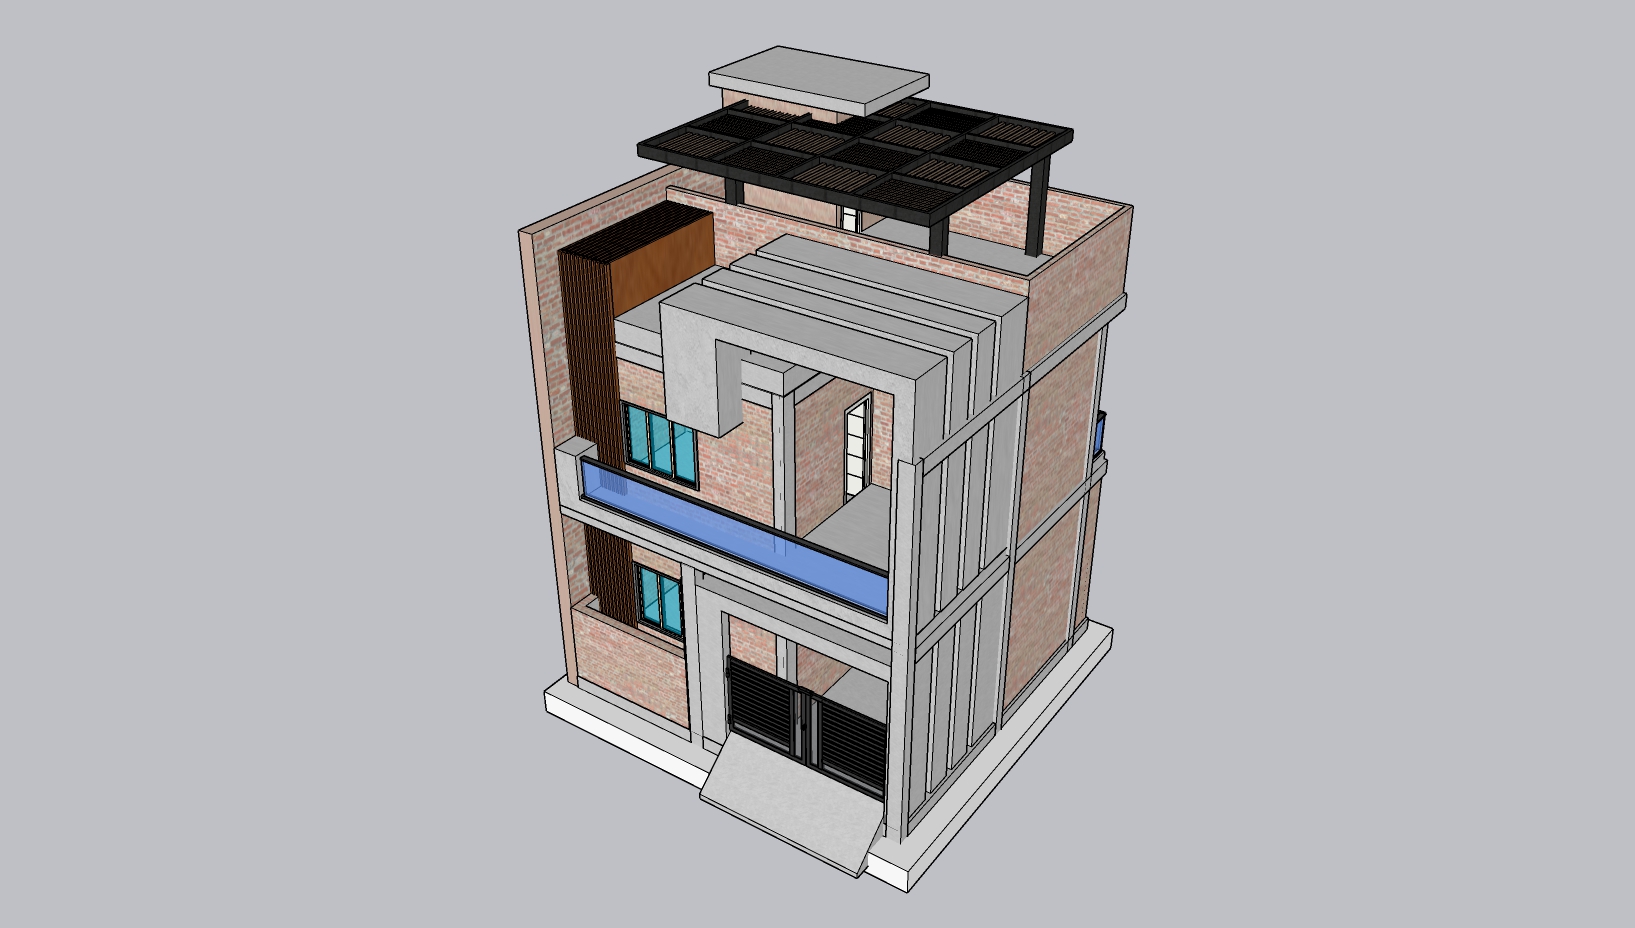 25x25 House Design | Cost 10-12 Lacs | 25x25 House Plans | 25'x25' | Parking | Terrace Garden BY 3D HOMES